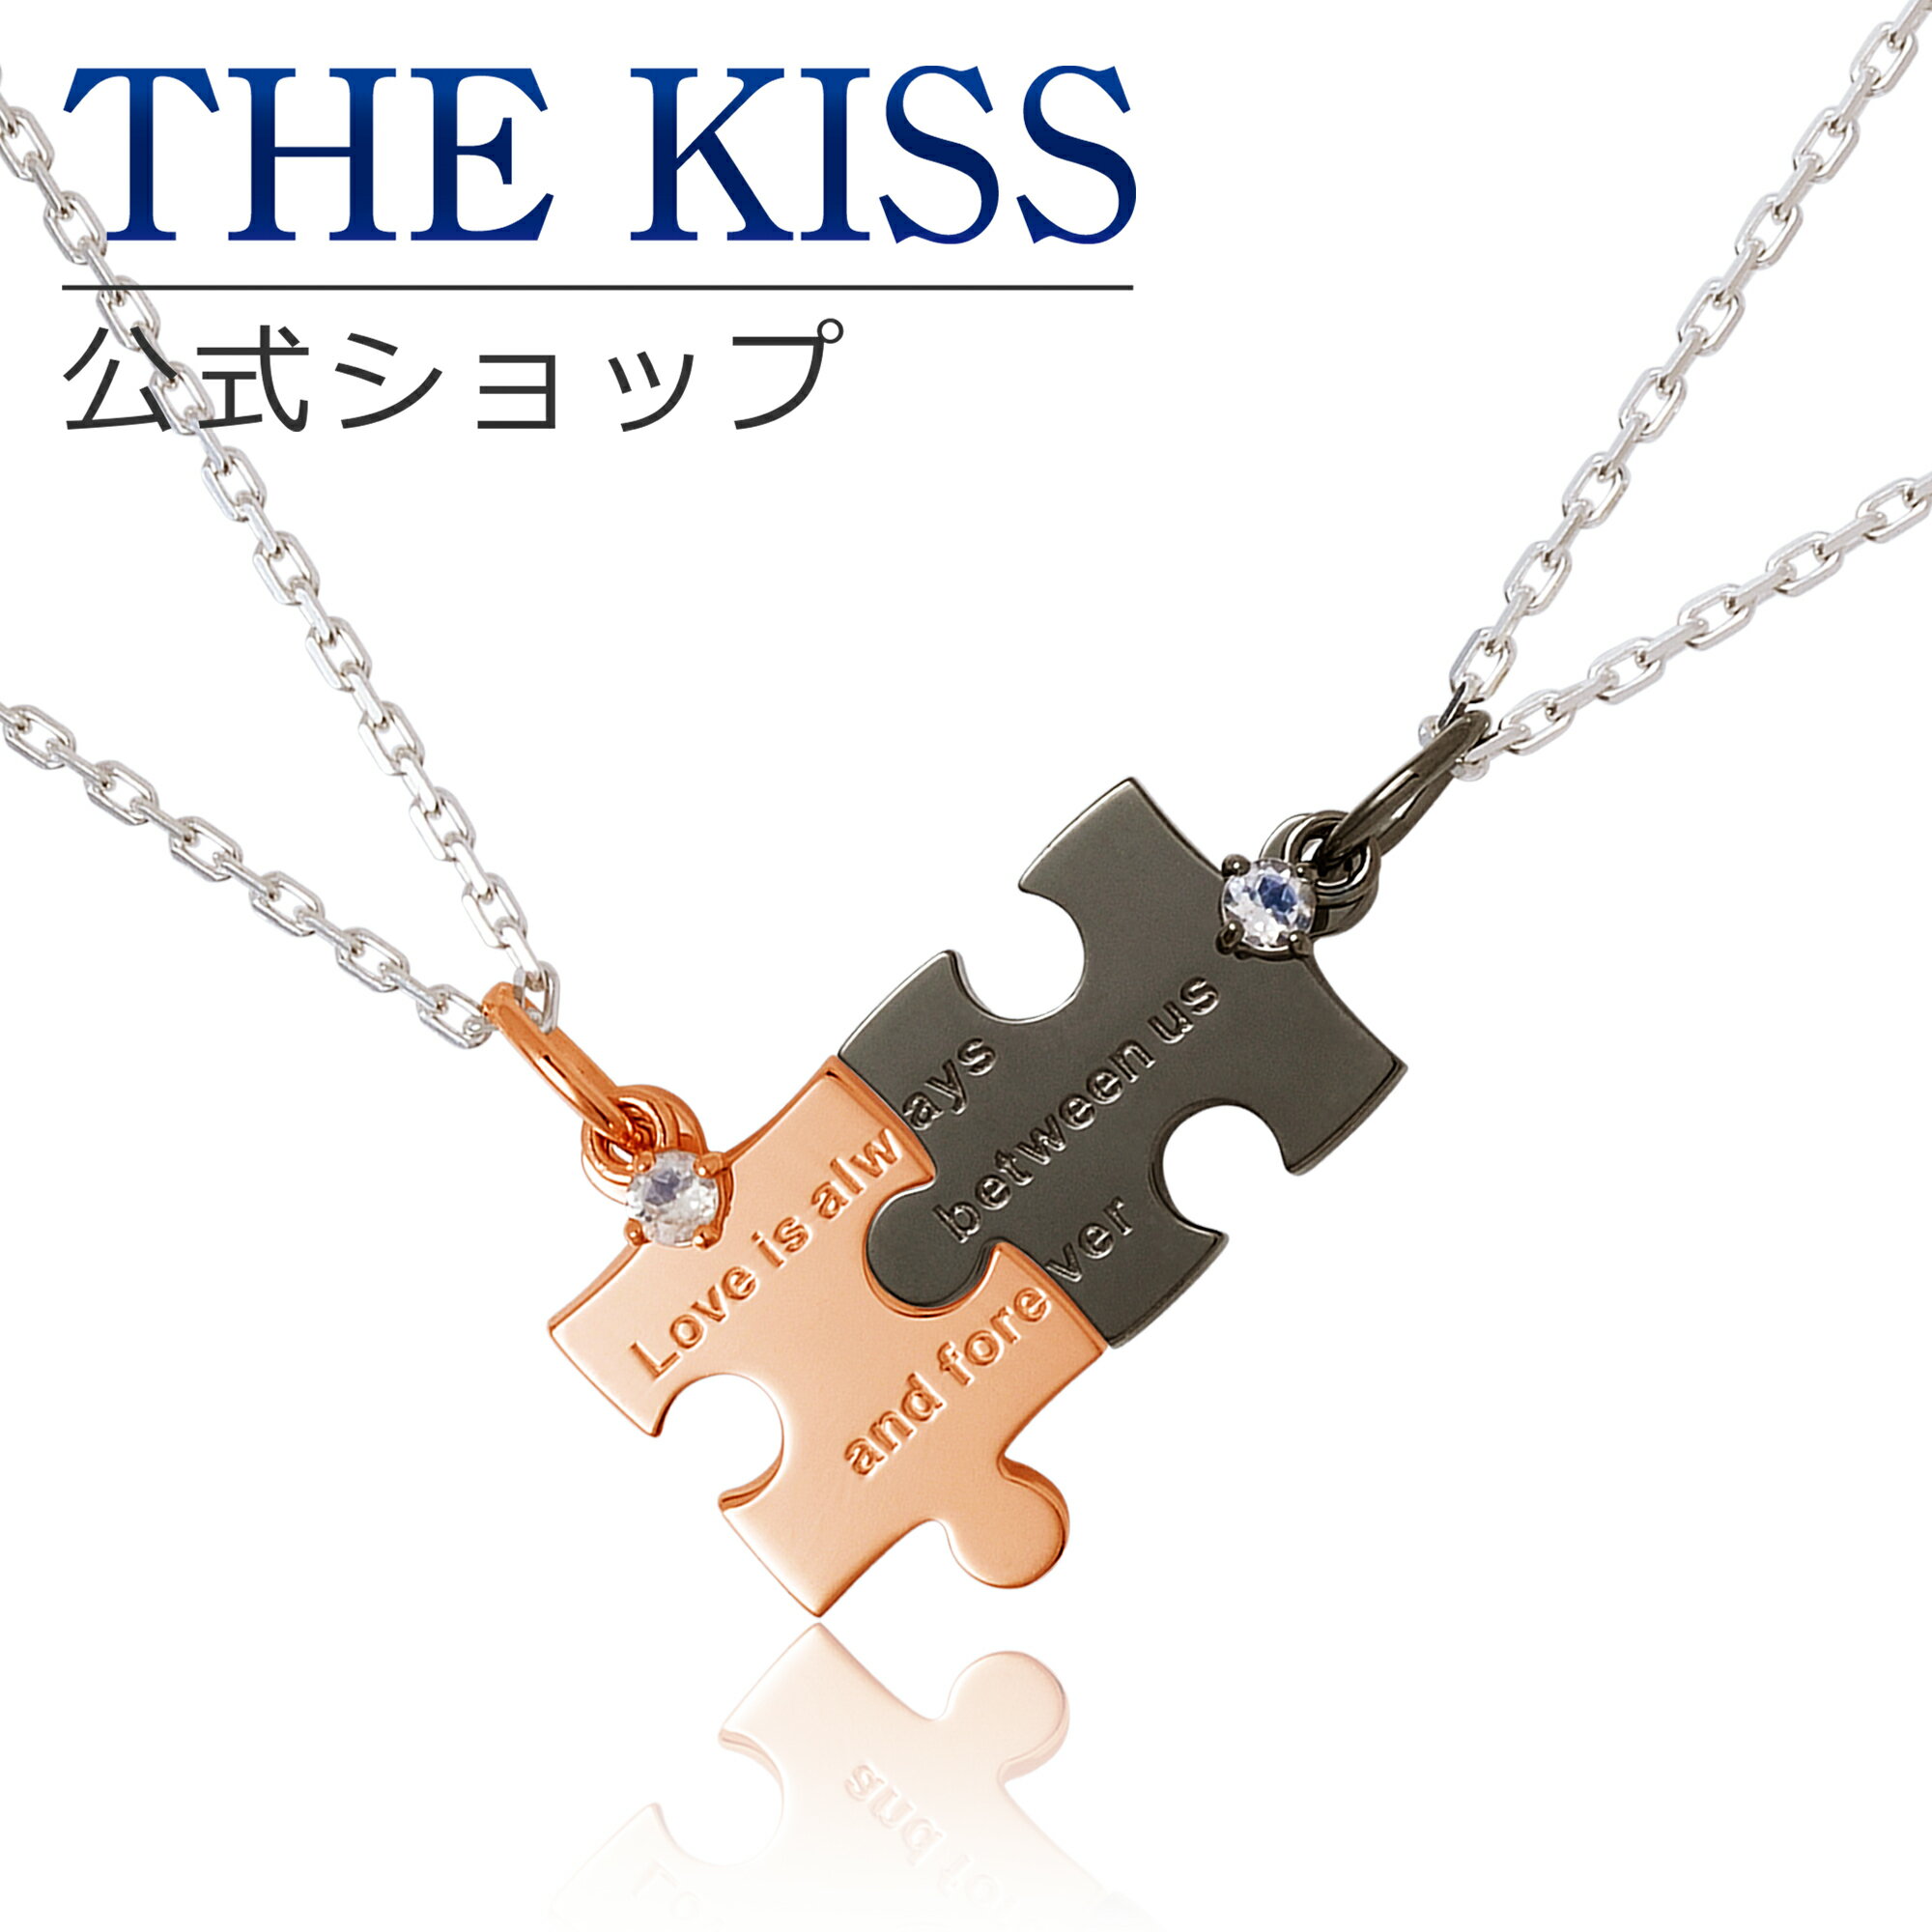 【ラッピング無料】THE KISS 公式ショ